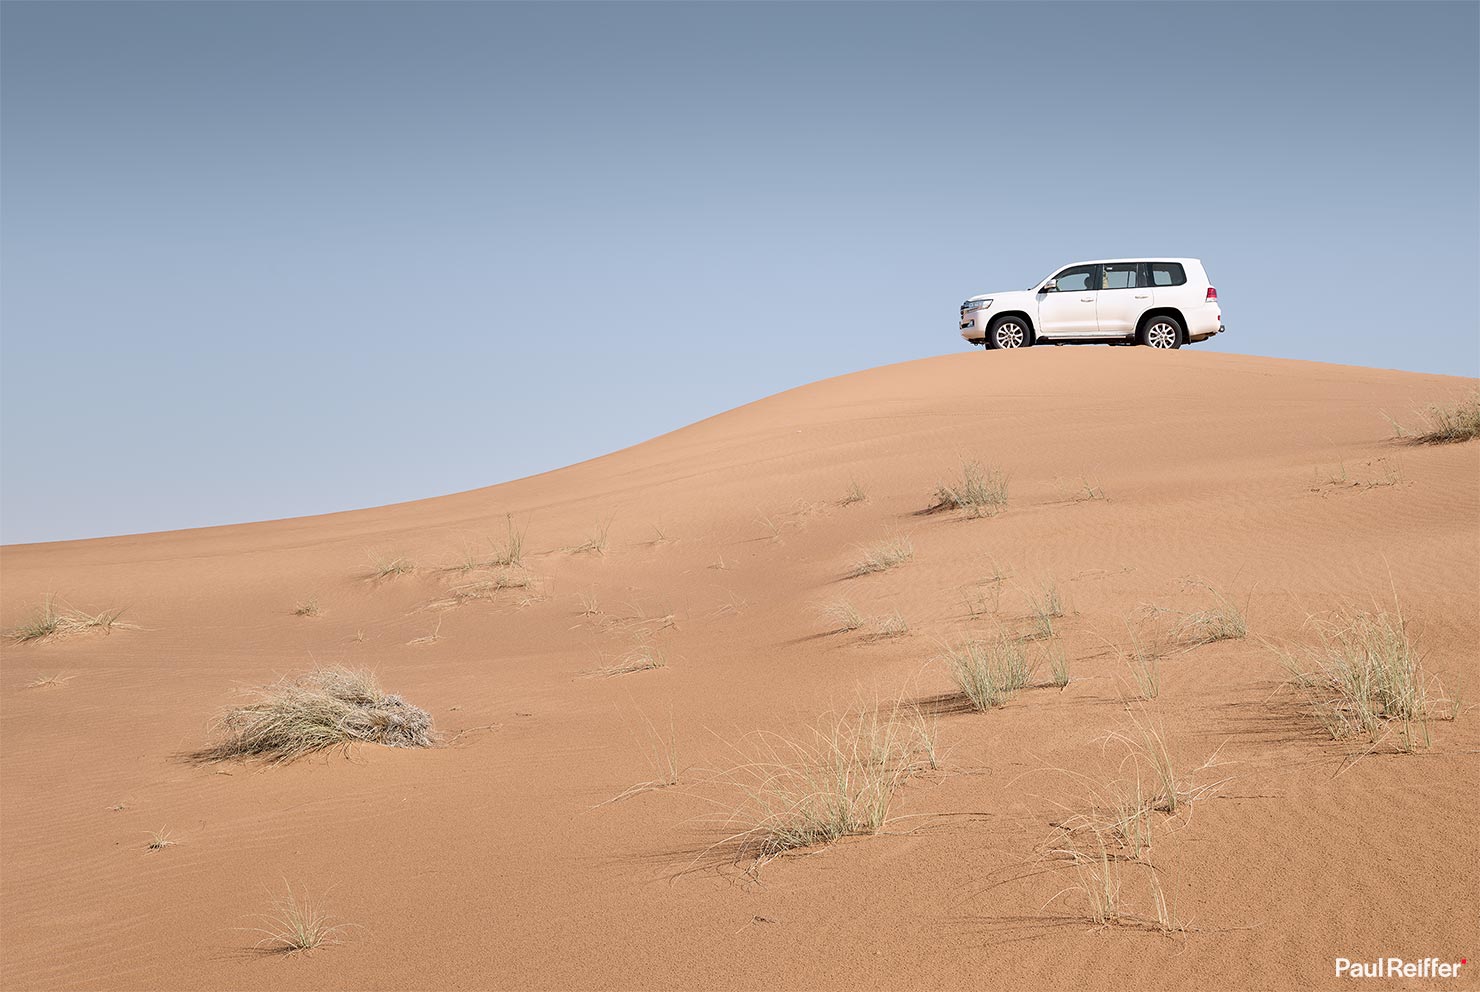 Sand Dunes Land Cruiser 4x4 Desert Dubai Explore Rodenstock XT Phase One 70mm Lens Testing Results Review Launch Tethered Tilt Focus